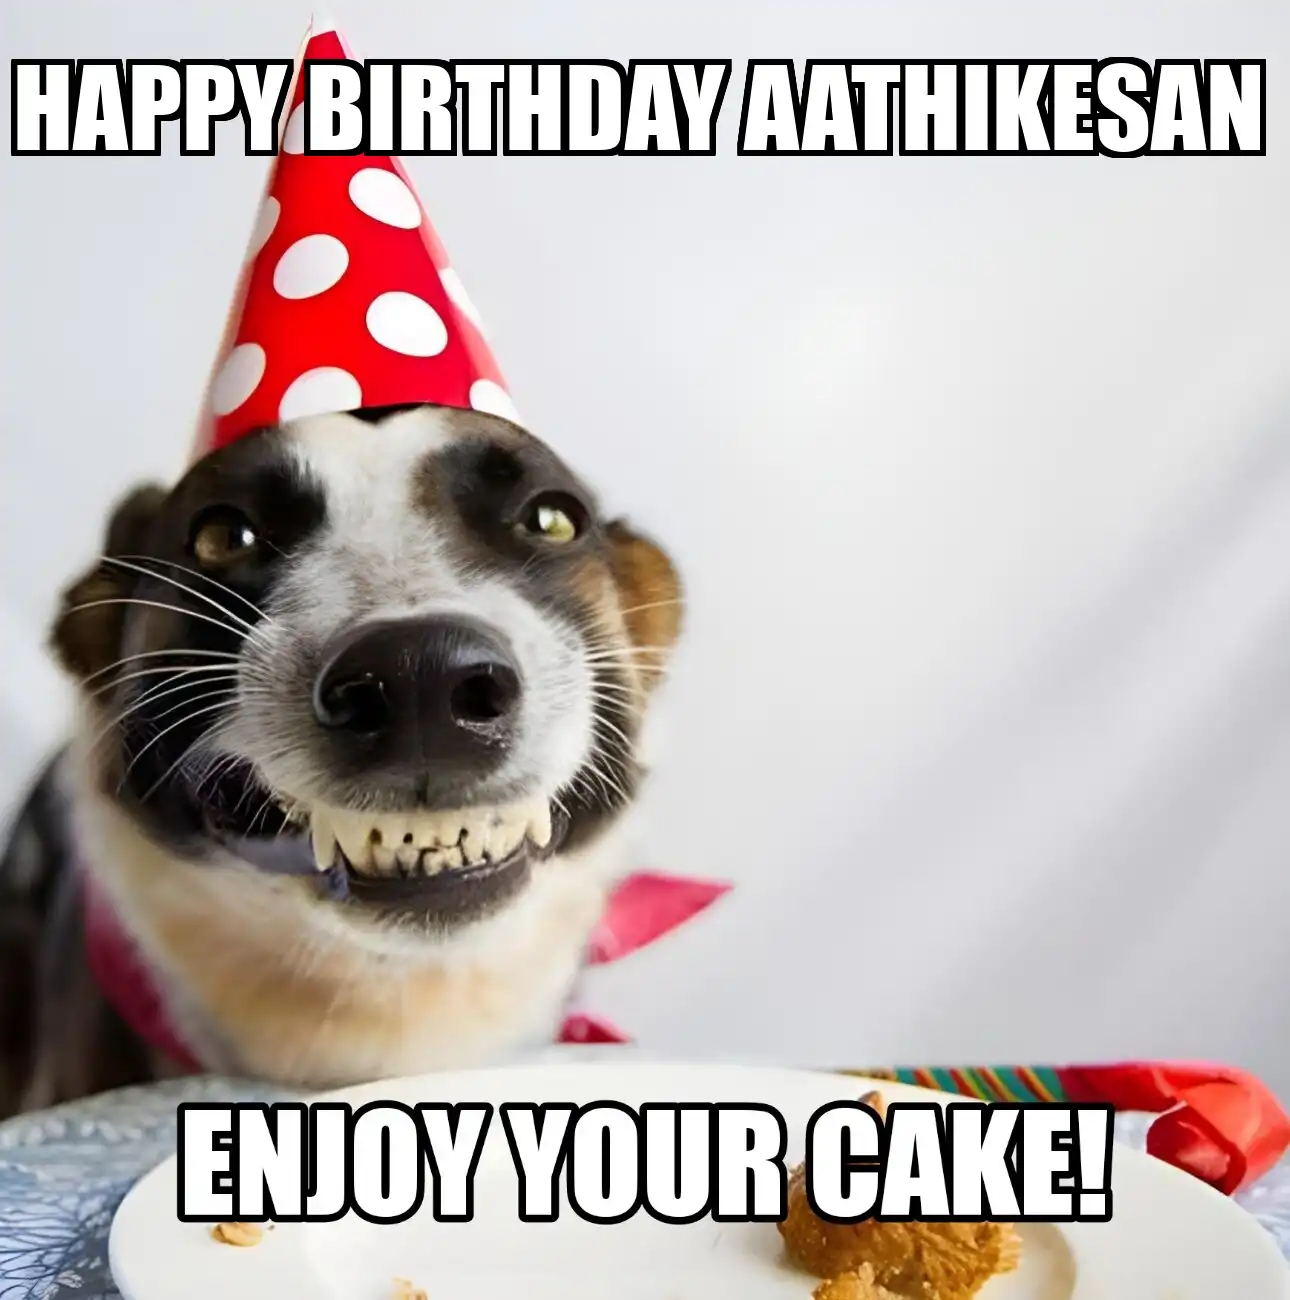 Happy Birthday Aathikesan Enjoy Your Cake Dog Meme